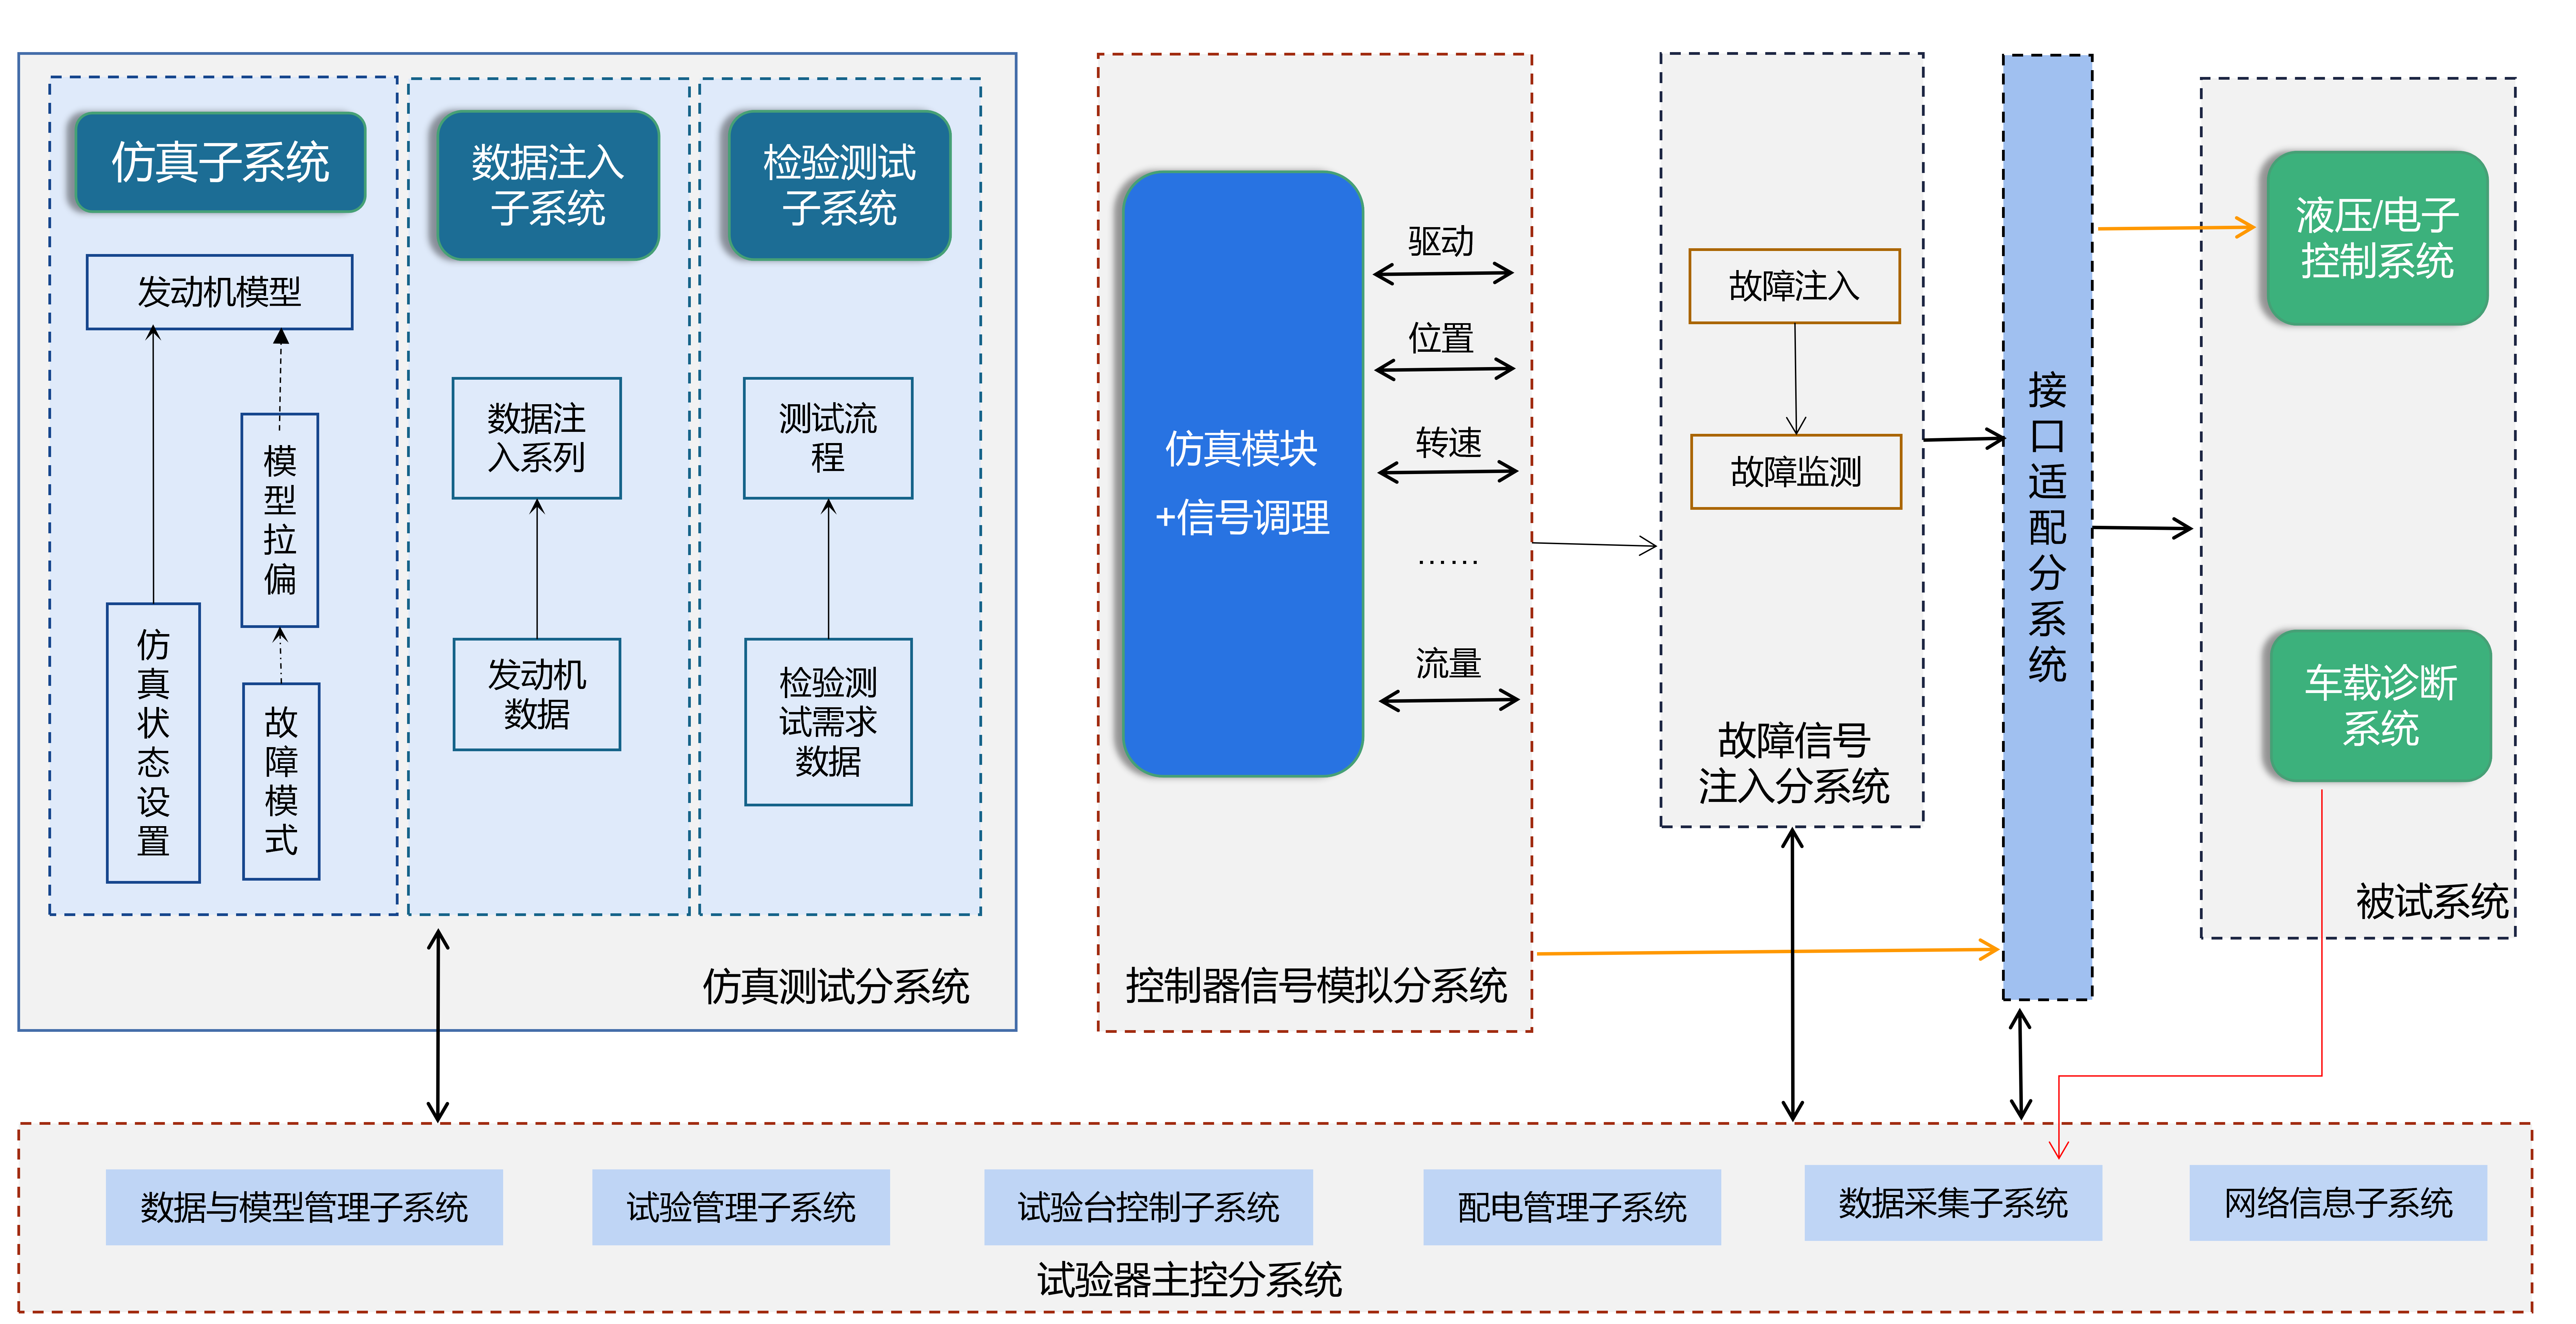 北京太阳成集团tyc234cc科技有限公司企业介绍V2023工业版V1.5_83.png